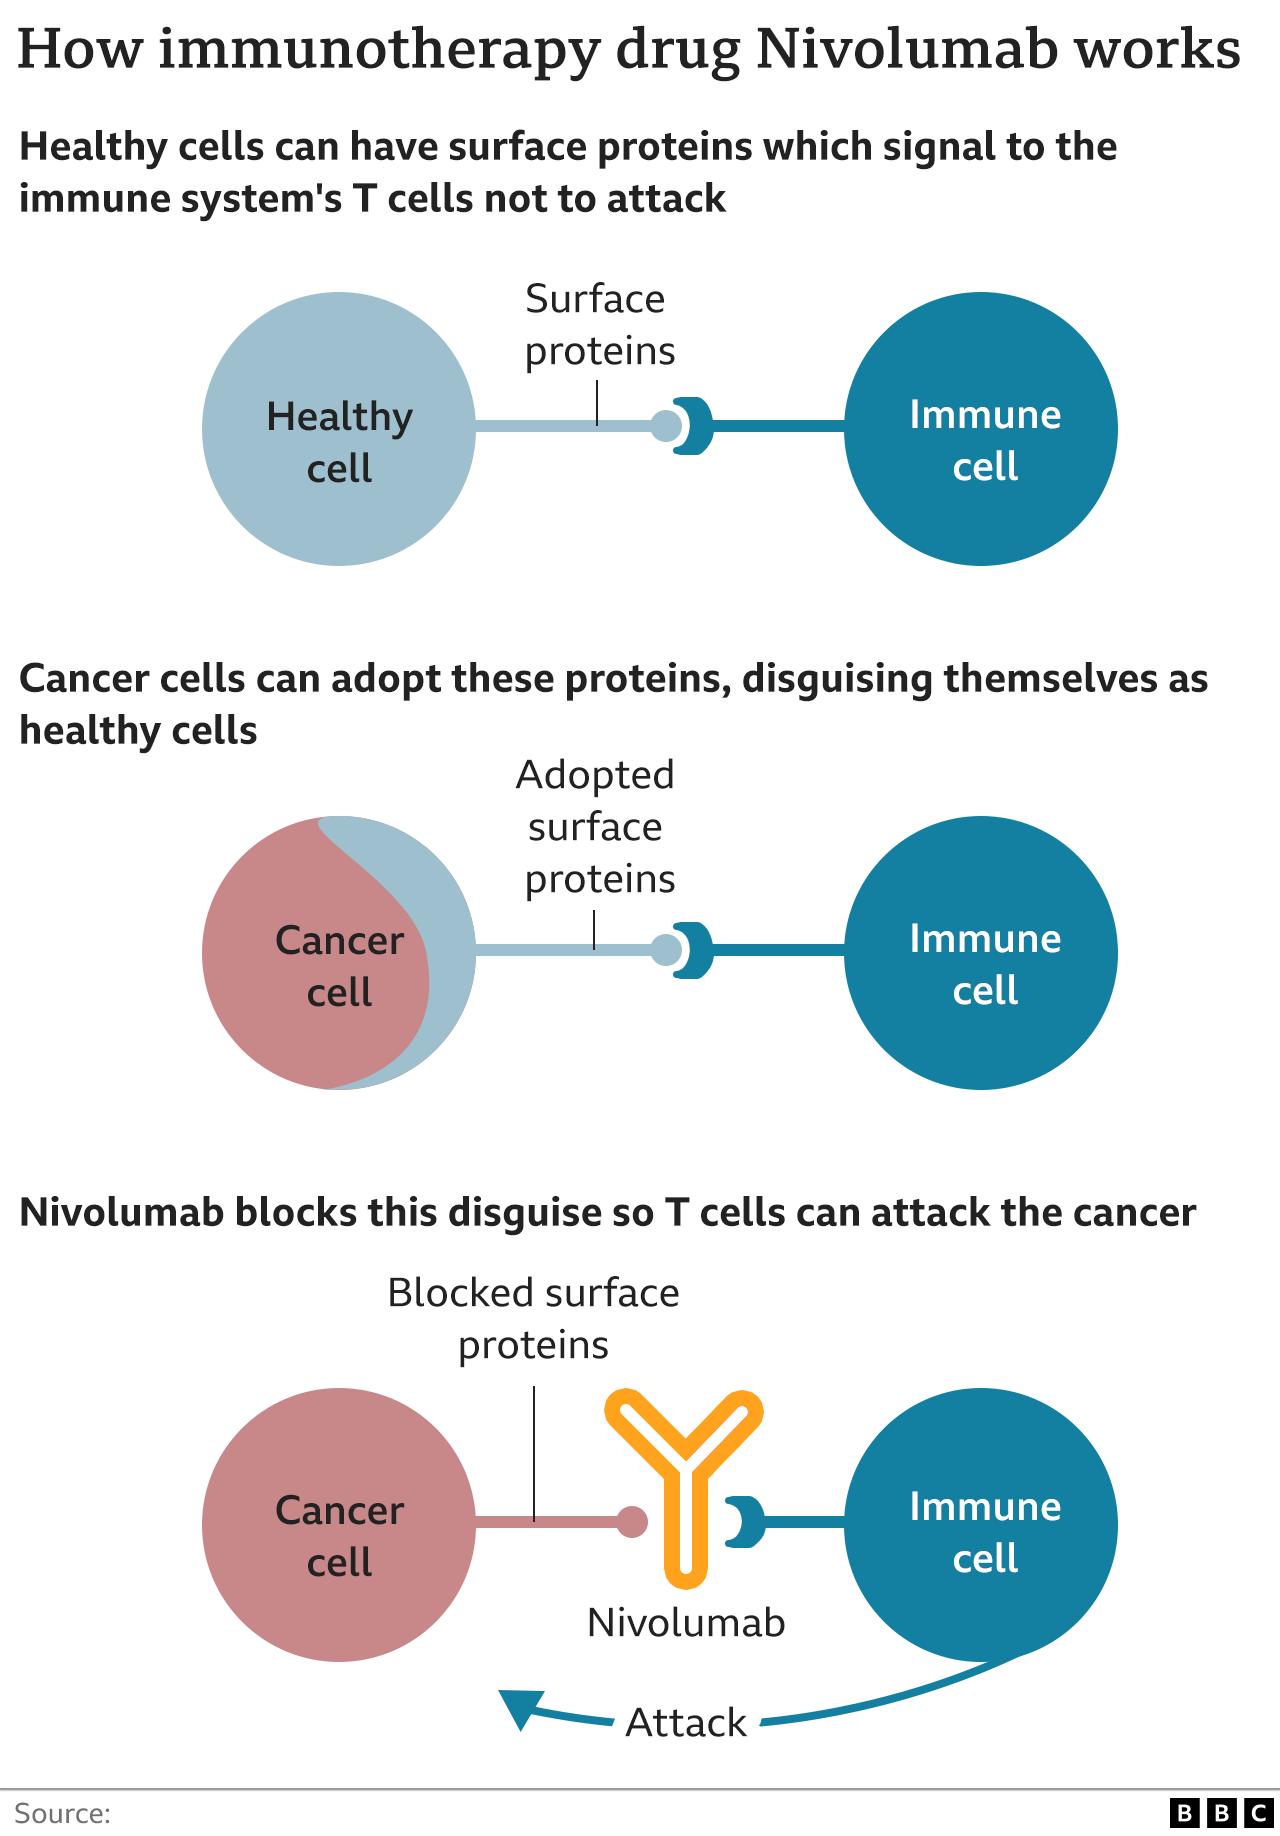 иллюстрация того, как работают иммунотерапевтические препараты